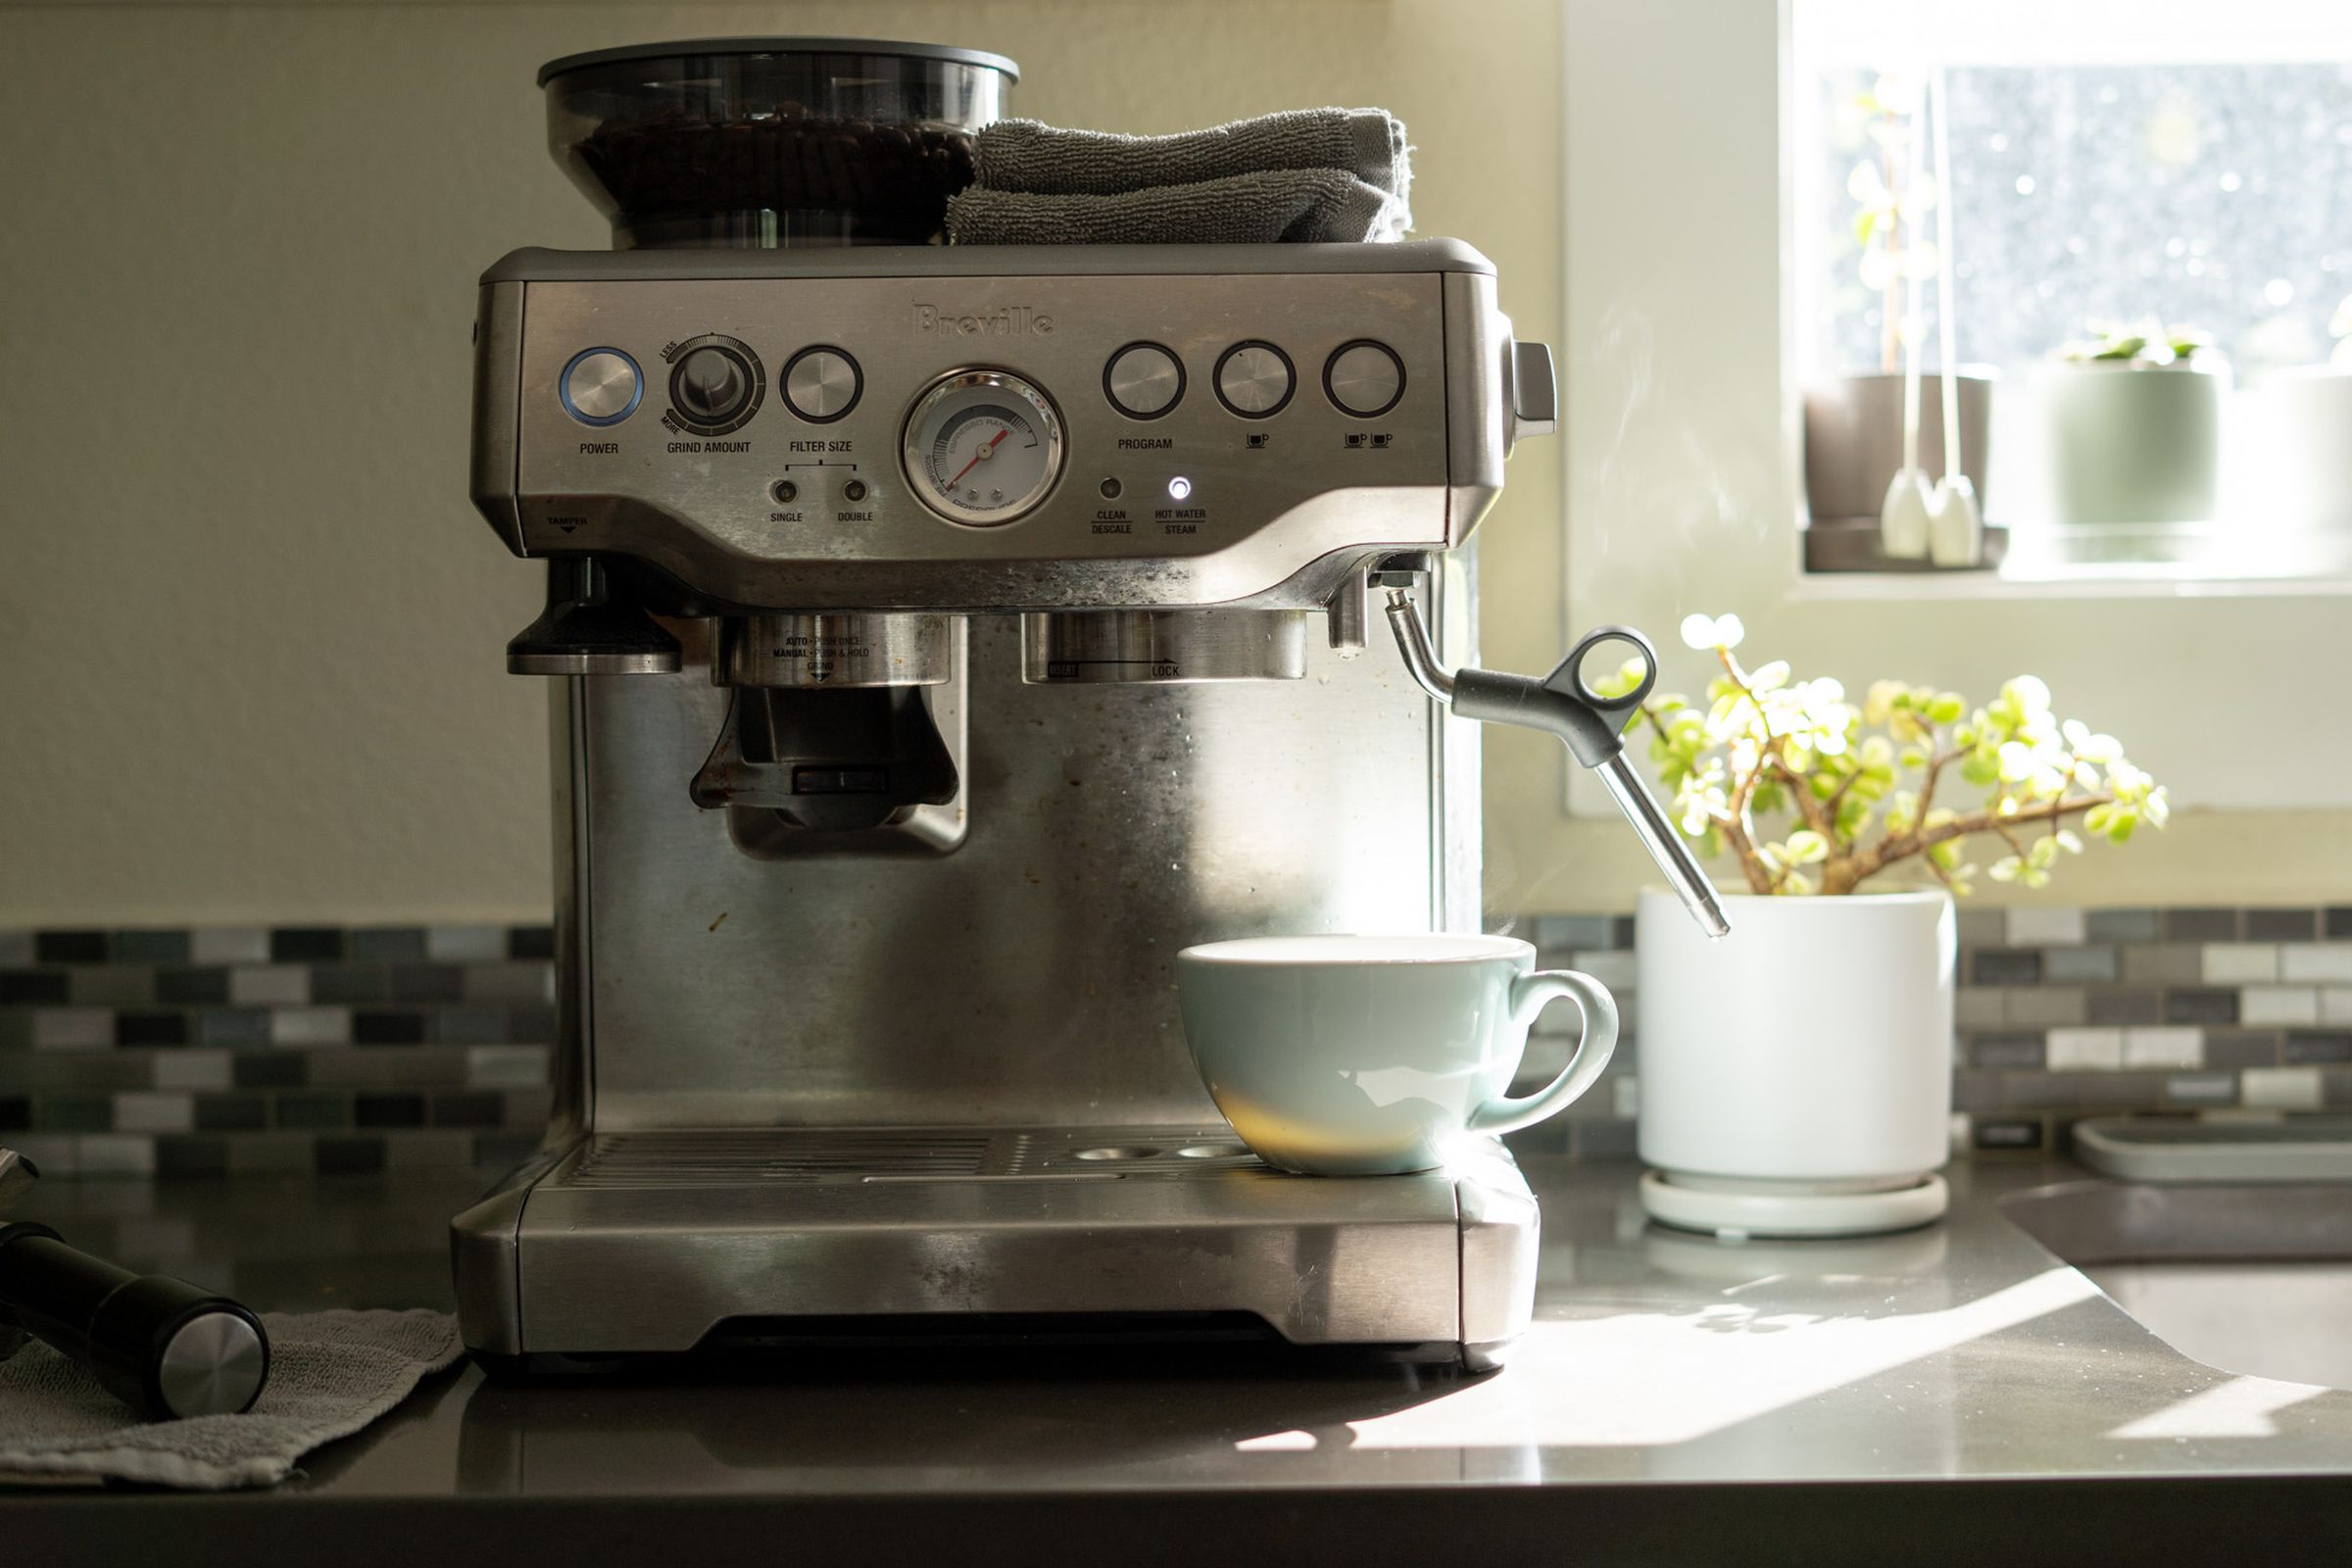 Photo of Breville espresso machine on a counter.